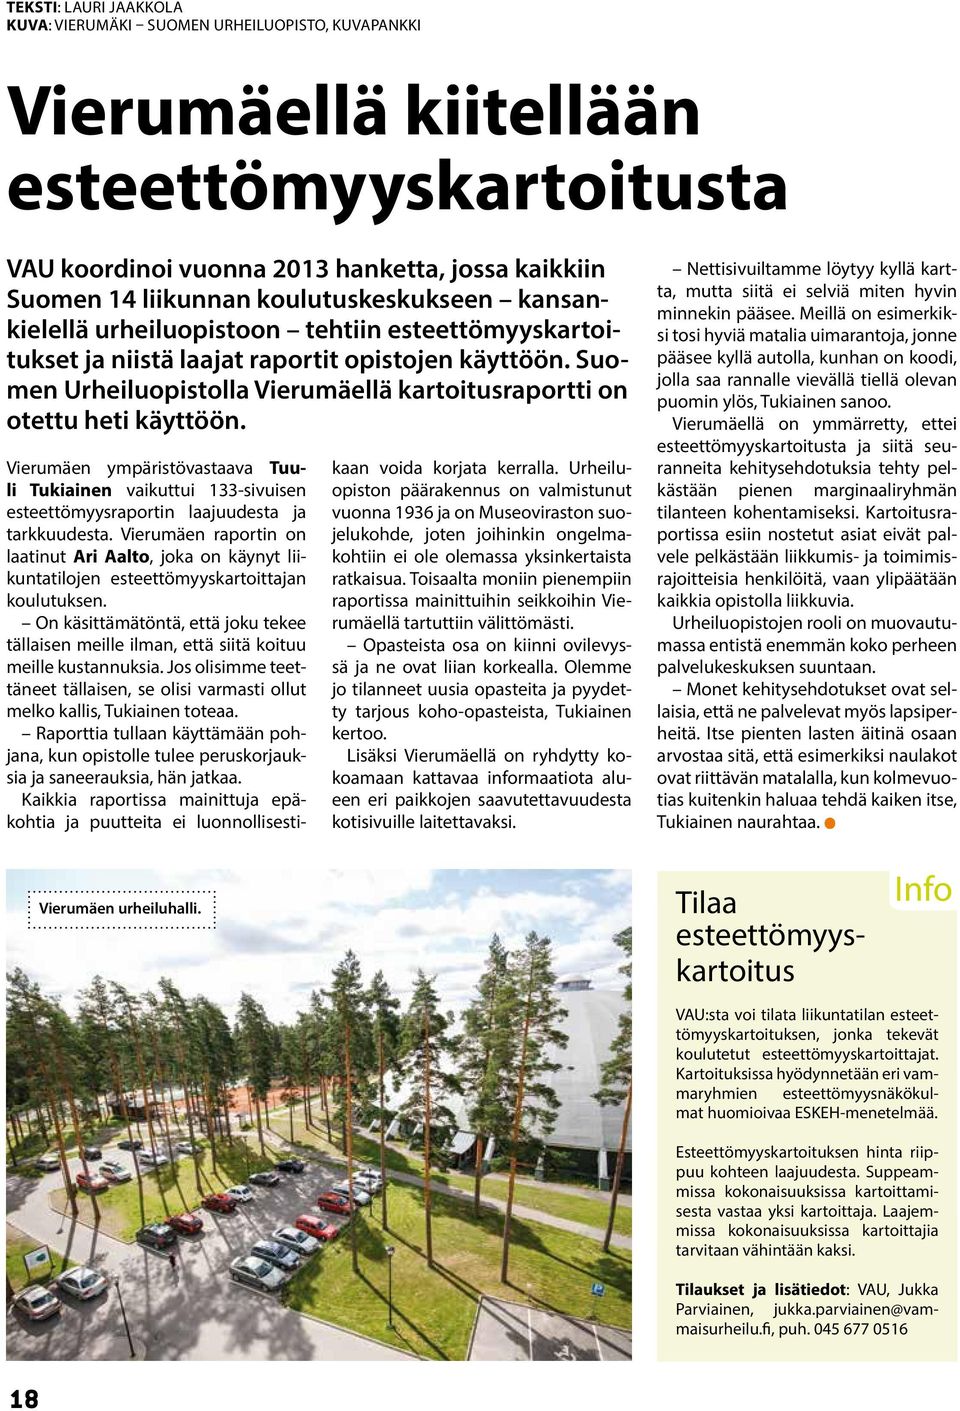 Suomen Urheiluopistolla Vierumäellä kartoitusraportti on otettu heti käyttöön. Vierumäen ympäristövastaava Tuuli Tukiainen vaikuttui 133-sivuisen esteettömyysraportin laajuudesta ja tarkkuudesta.